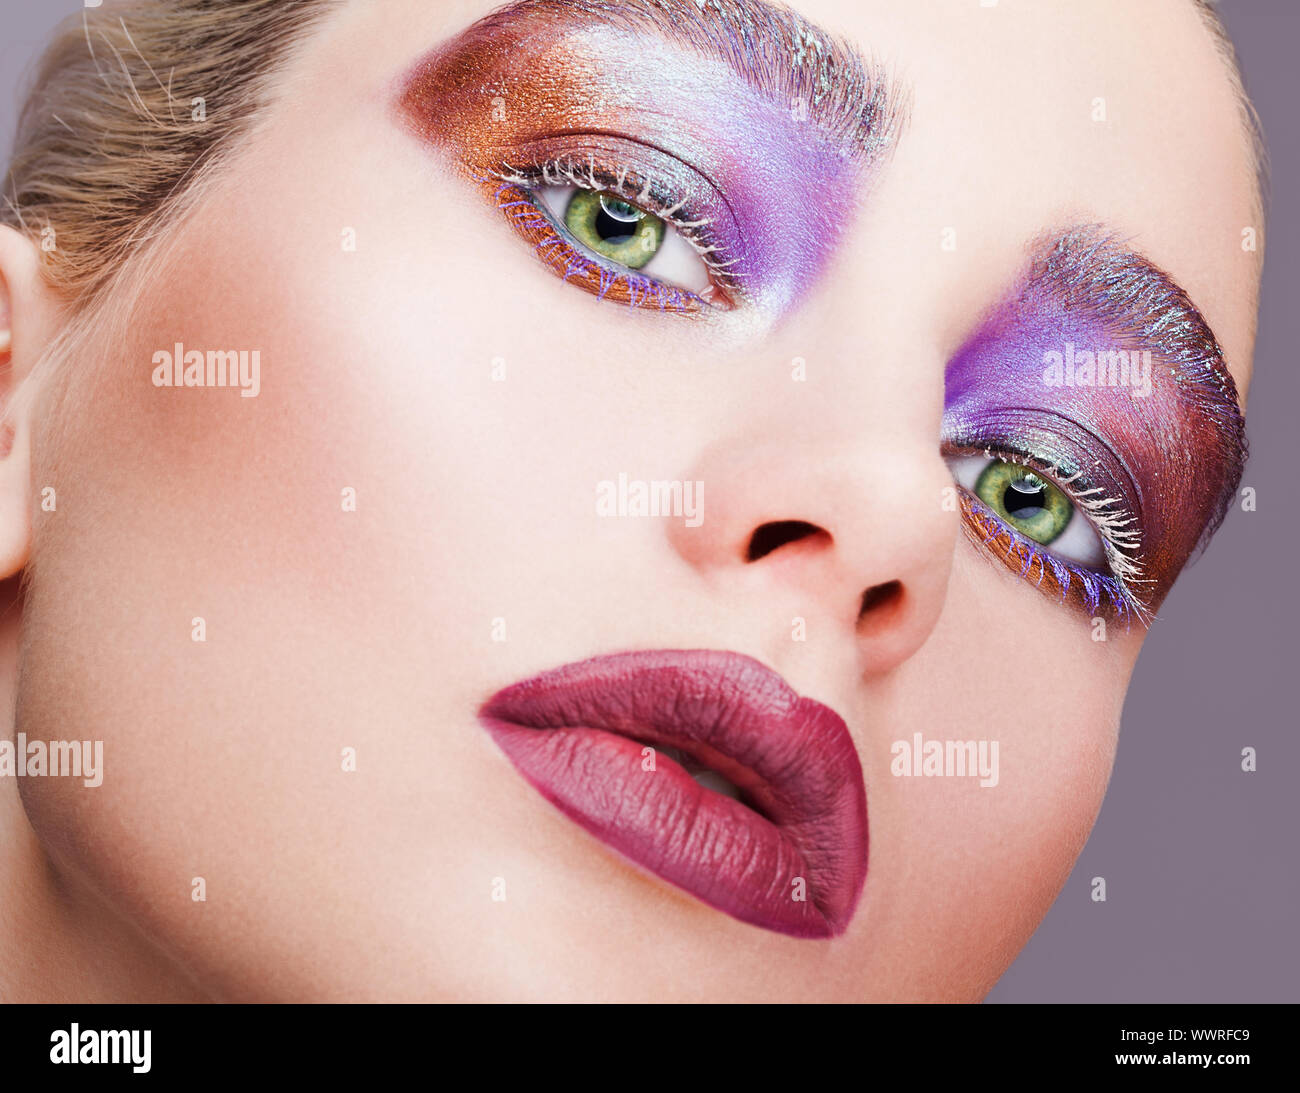 Hembra de color verde pistacho ojo ojos violeta noche con sombras, pestañas  en blanco y morado maquillaje labios Fotografía de stock - Alamy